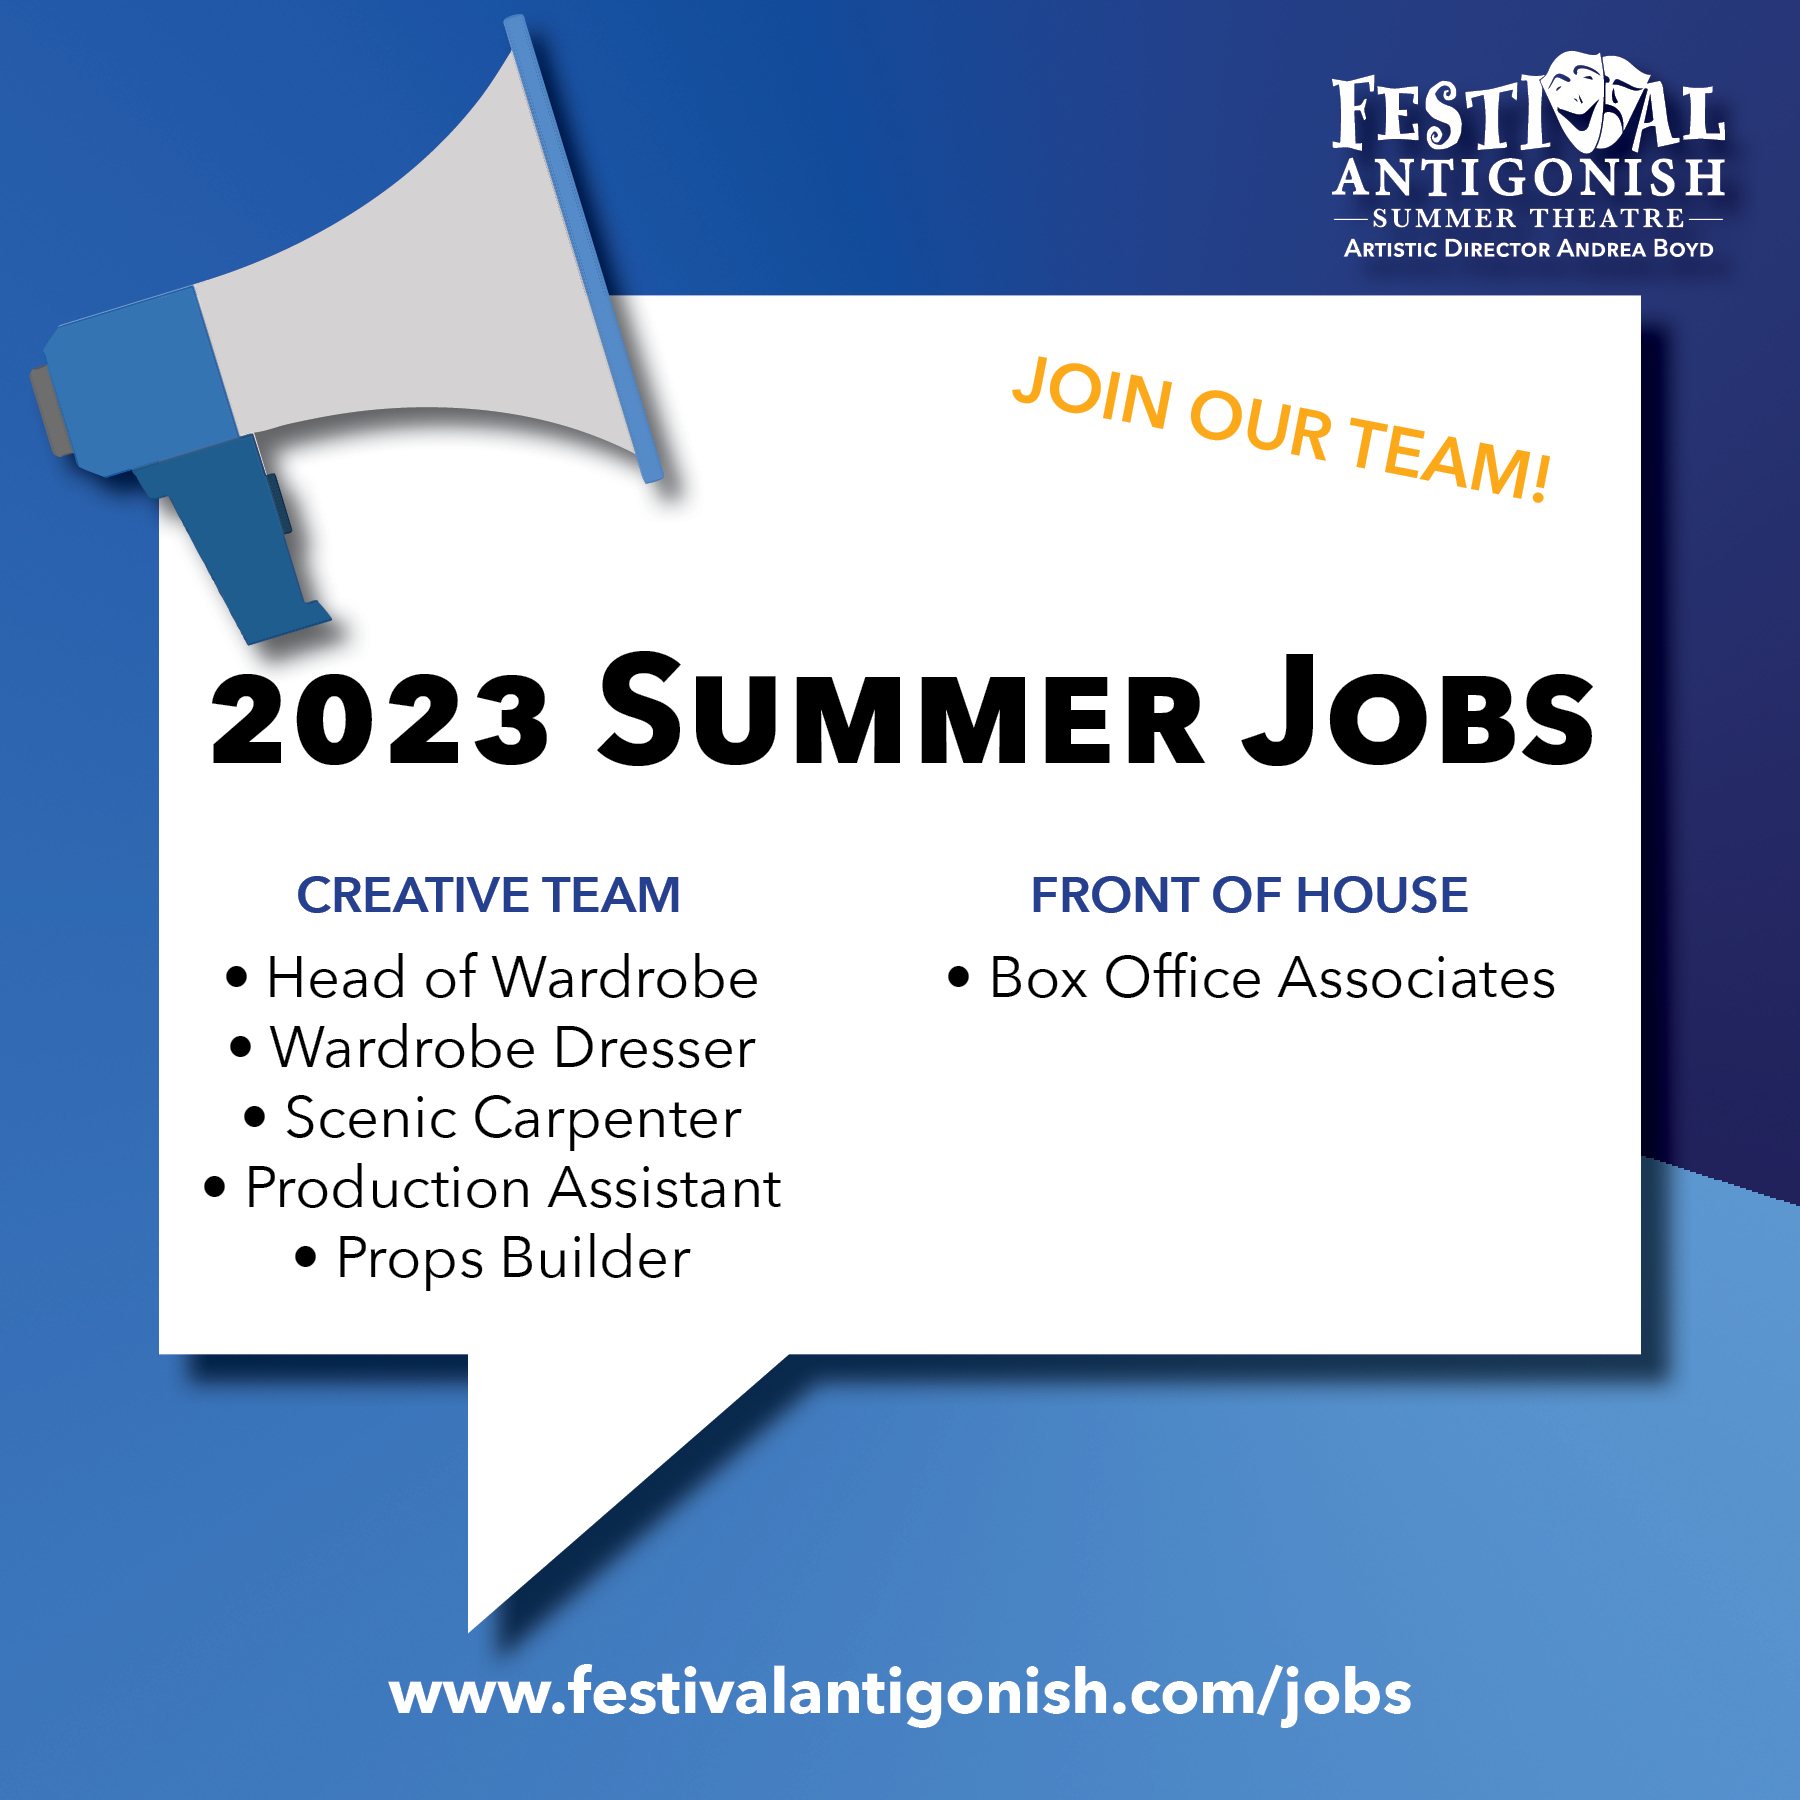 Summer Jobs: Festival Antigonish Summer Theatre 2023 ? - ArtsLink NB